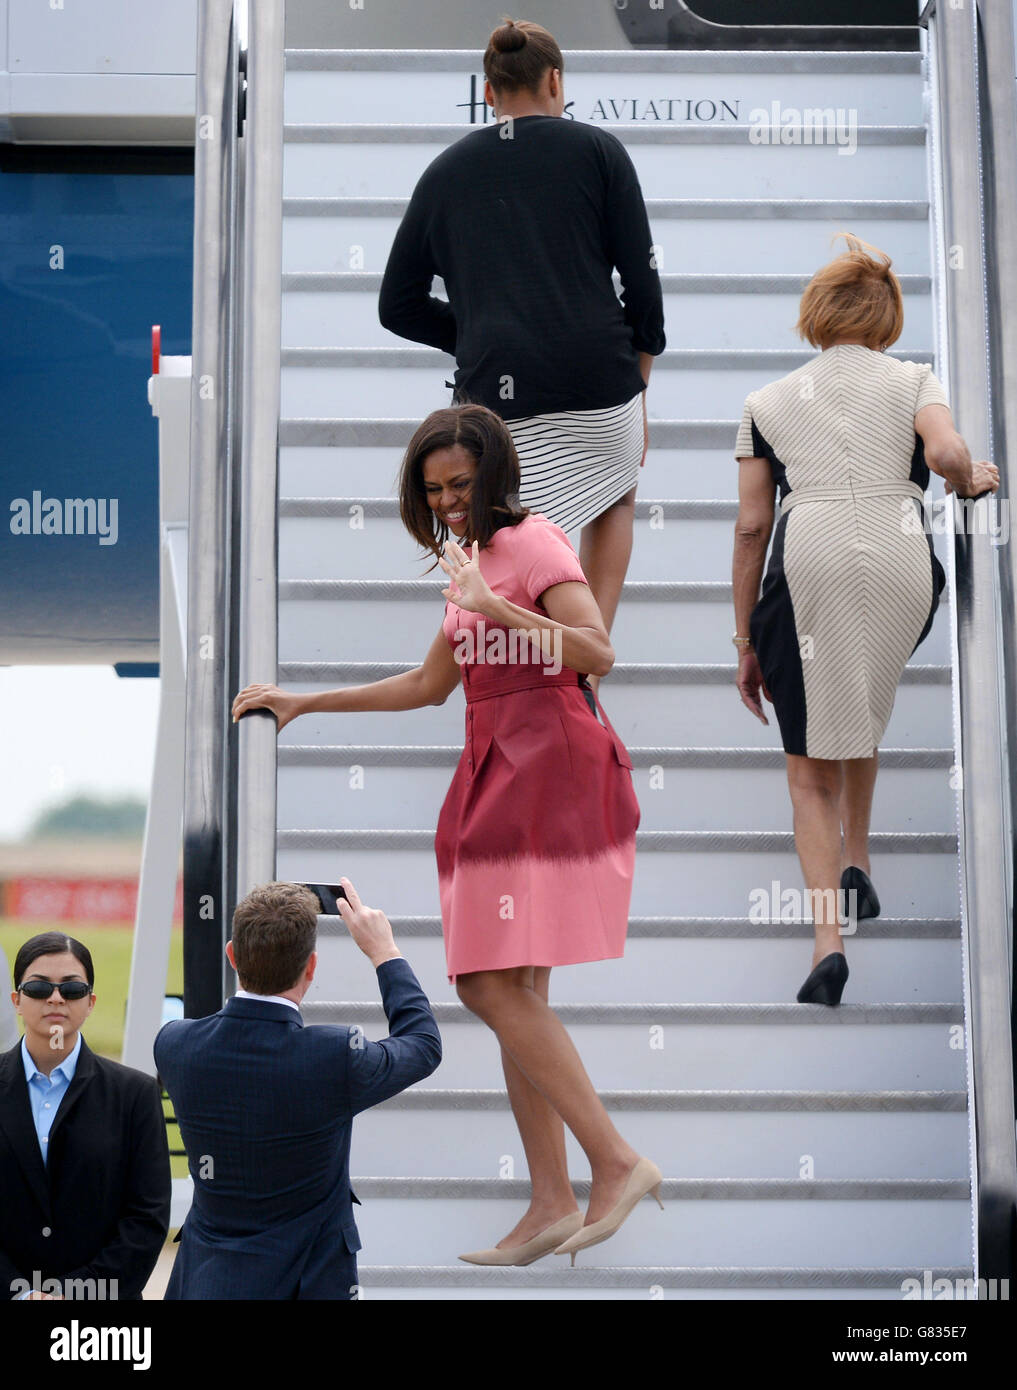 US-Botschafter in London Matthew Barzun fotografiert US-First Lady Michelle Obama, als sie nach einem dreitägigen Besuch im Land vom Stansted Airport in Essex abreist. Stockfoto